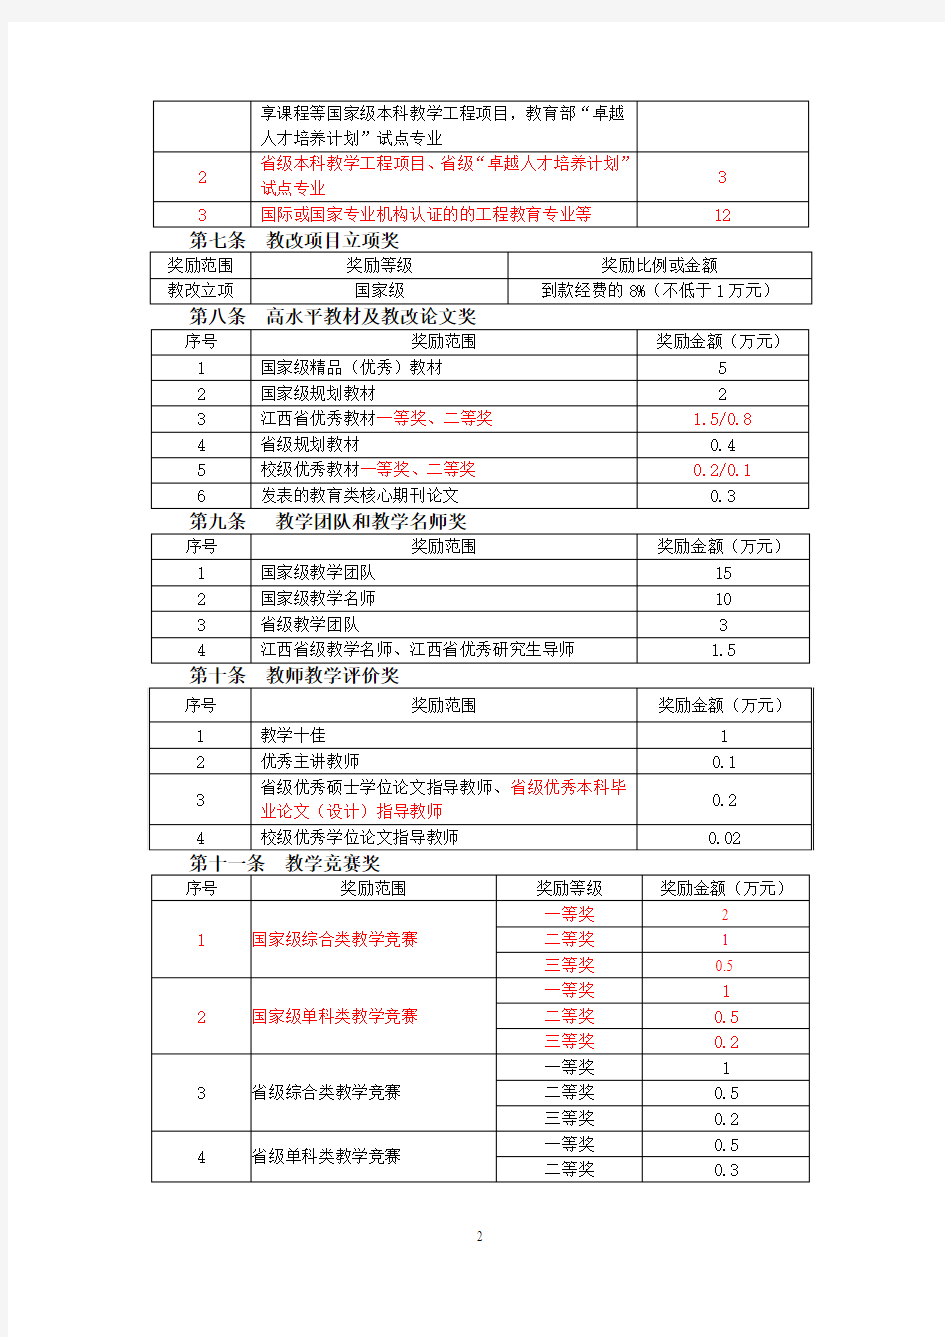 南昌航空大学教职工奖励管理办法(再次征求意见稿)20141223